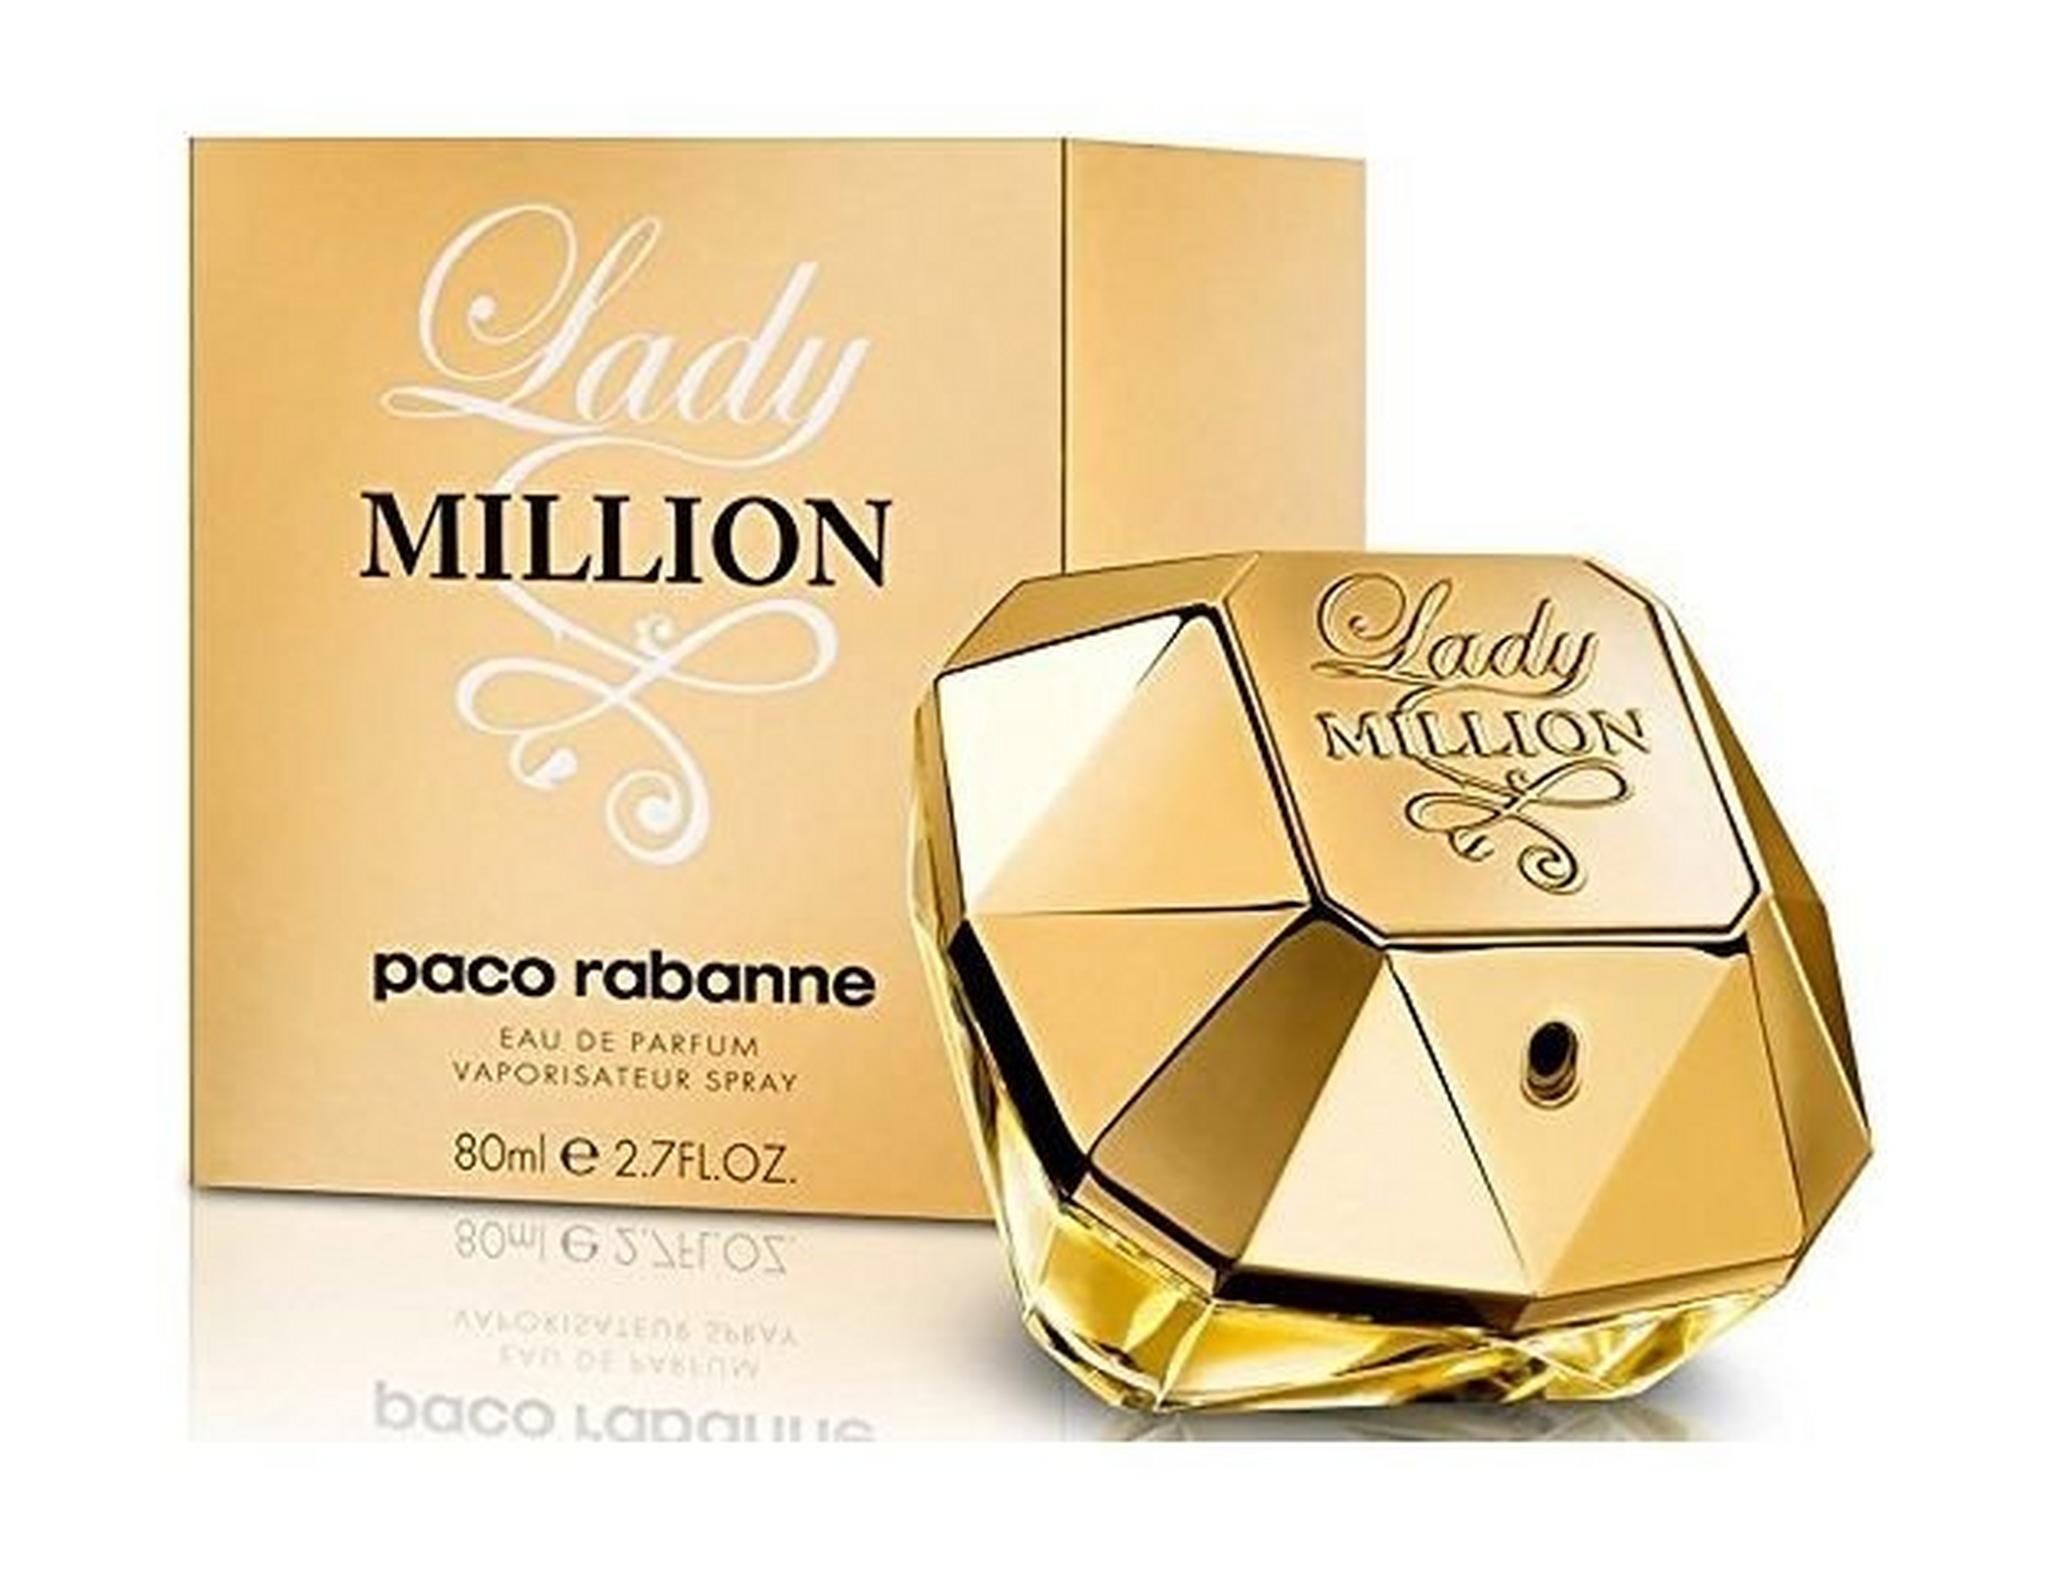 Lady Million by Paco Rabanne for Women 80mL Eau de Parfum